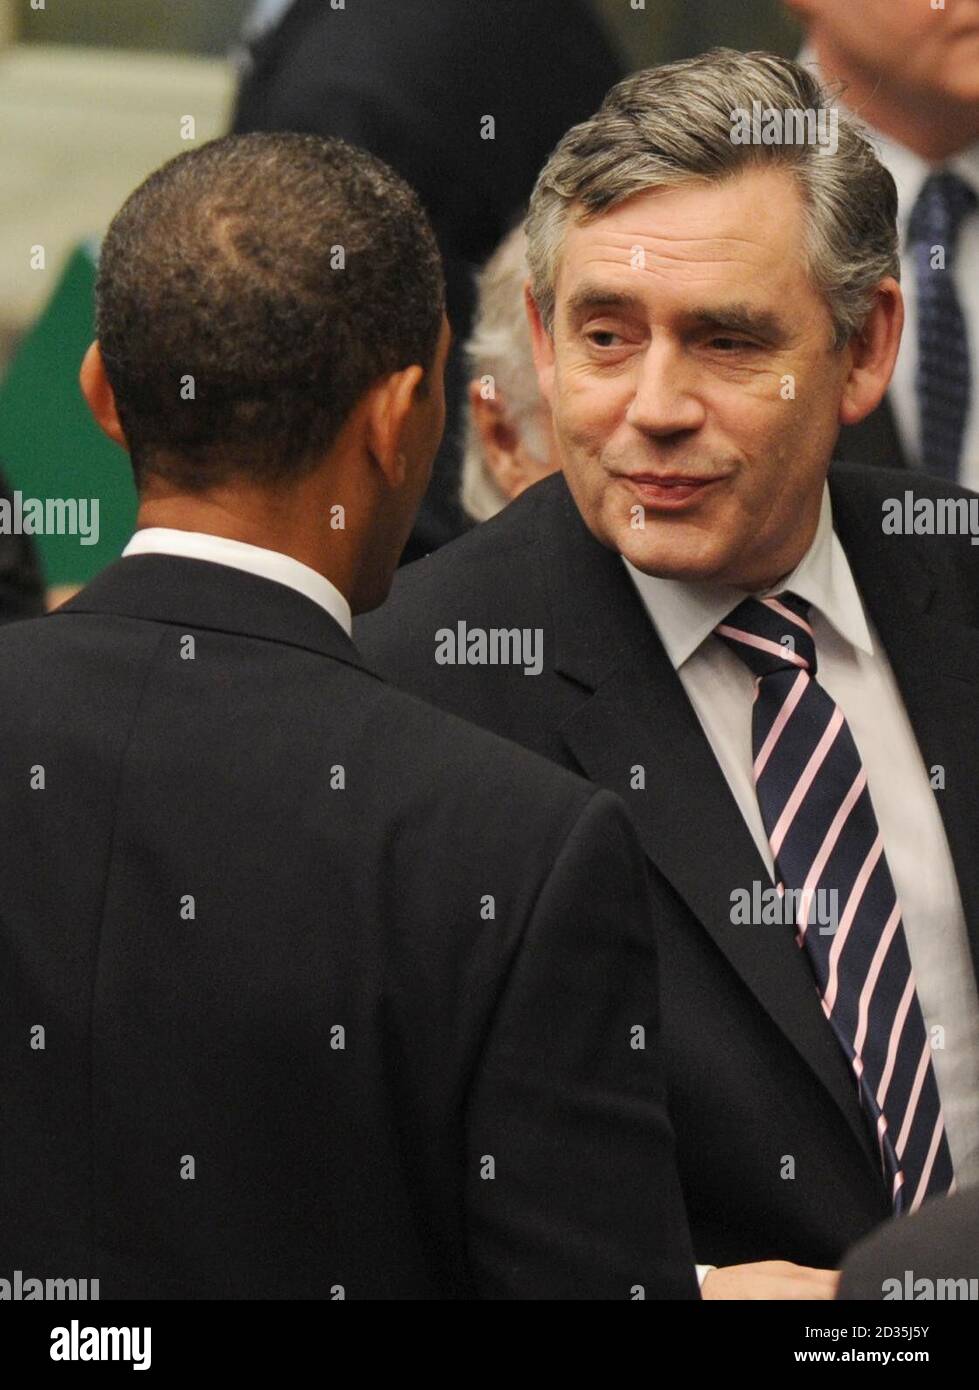 LE président AMÉRICAIN Barack Obama et le Premier ministre britannique Gordon Brown quittent le Conseil de sécurité de l'ONU à New York. Banque D'Images